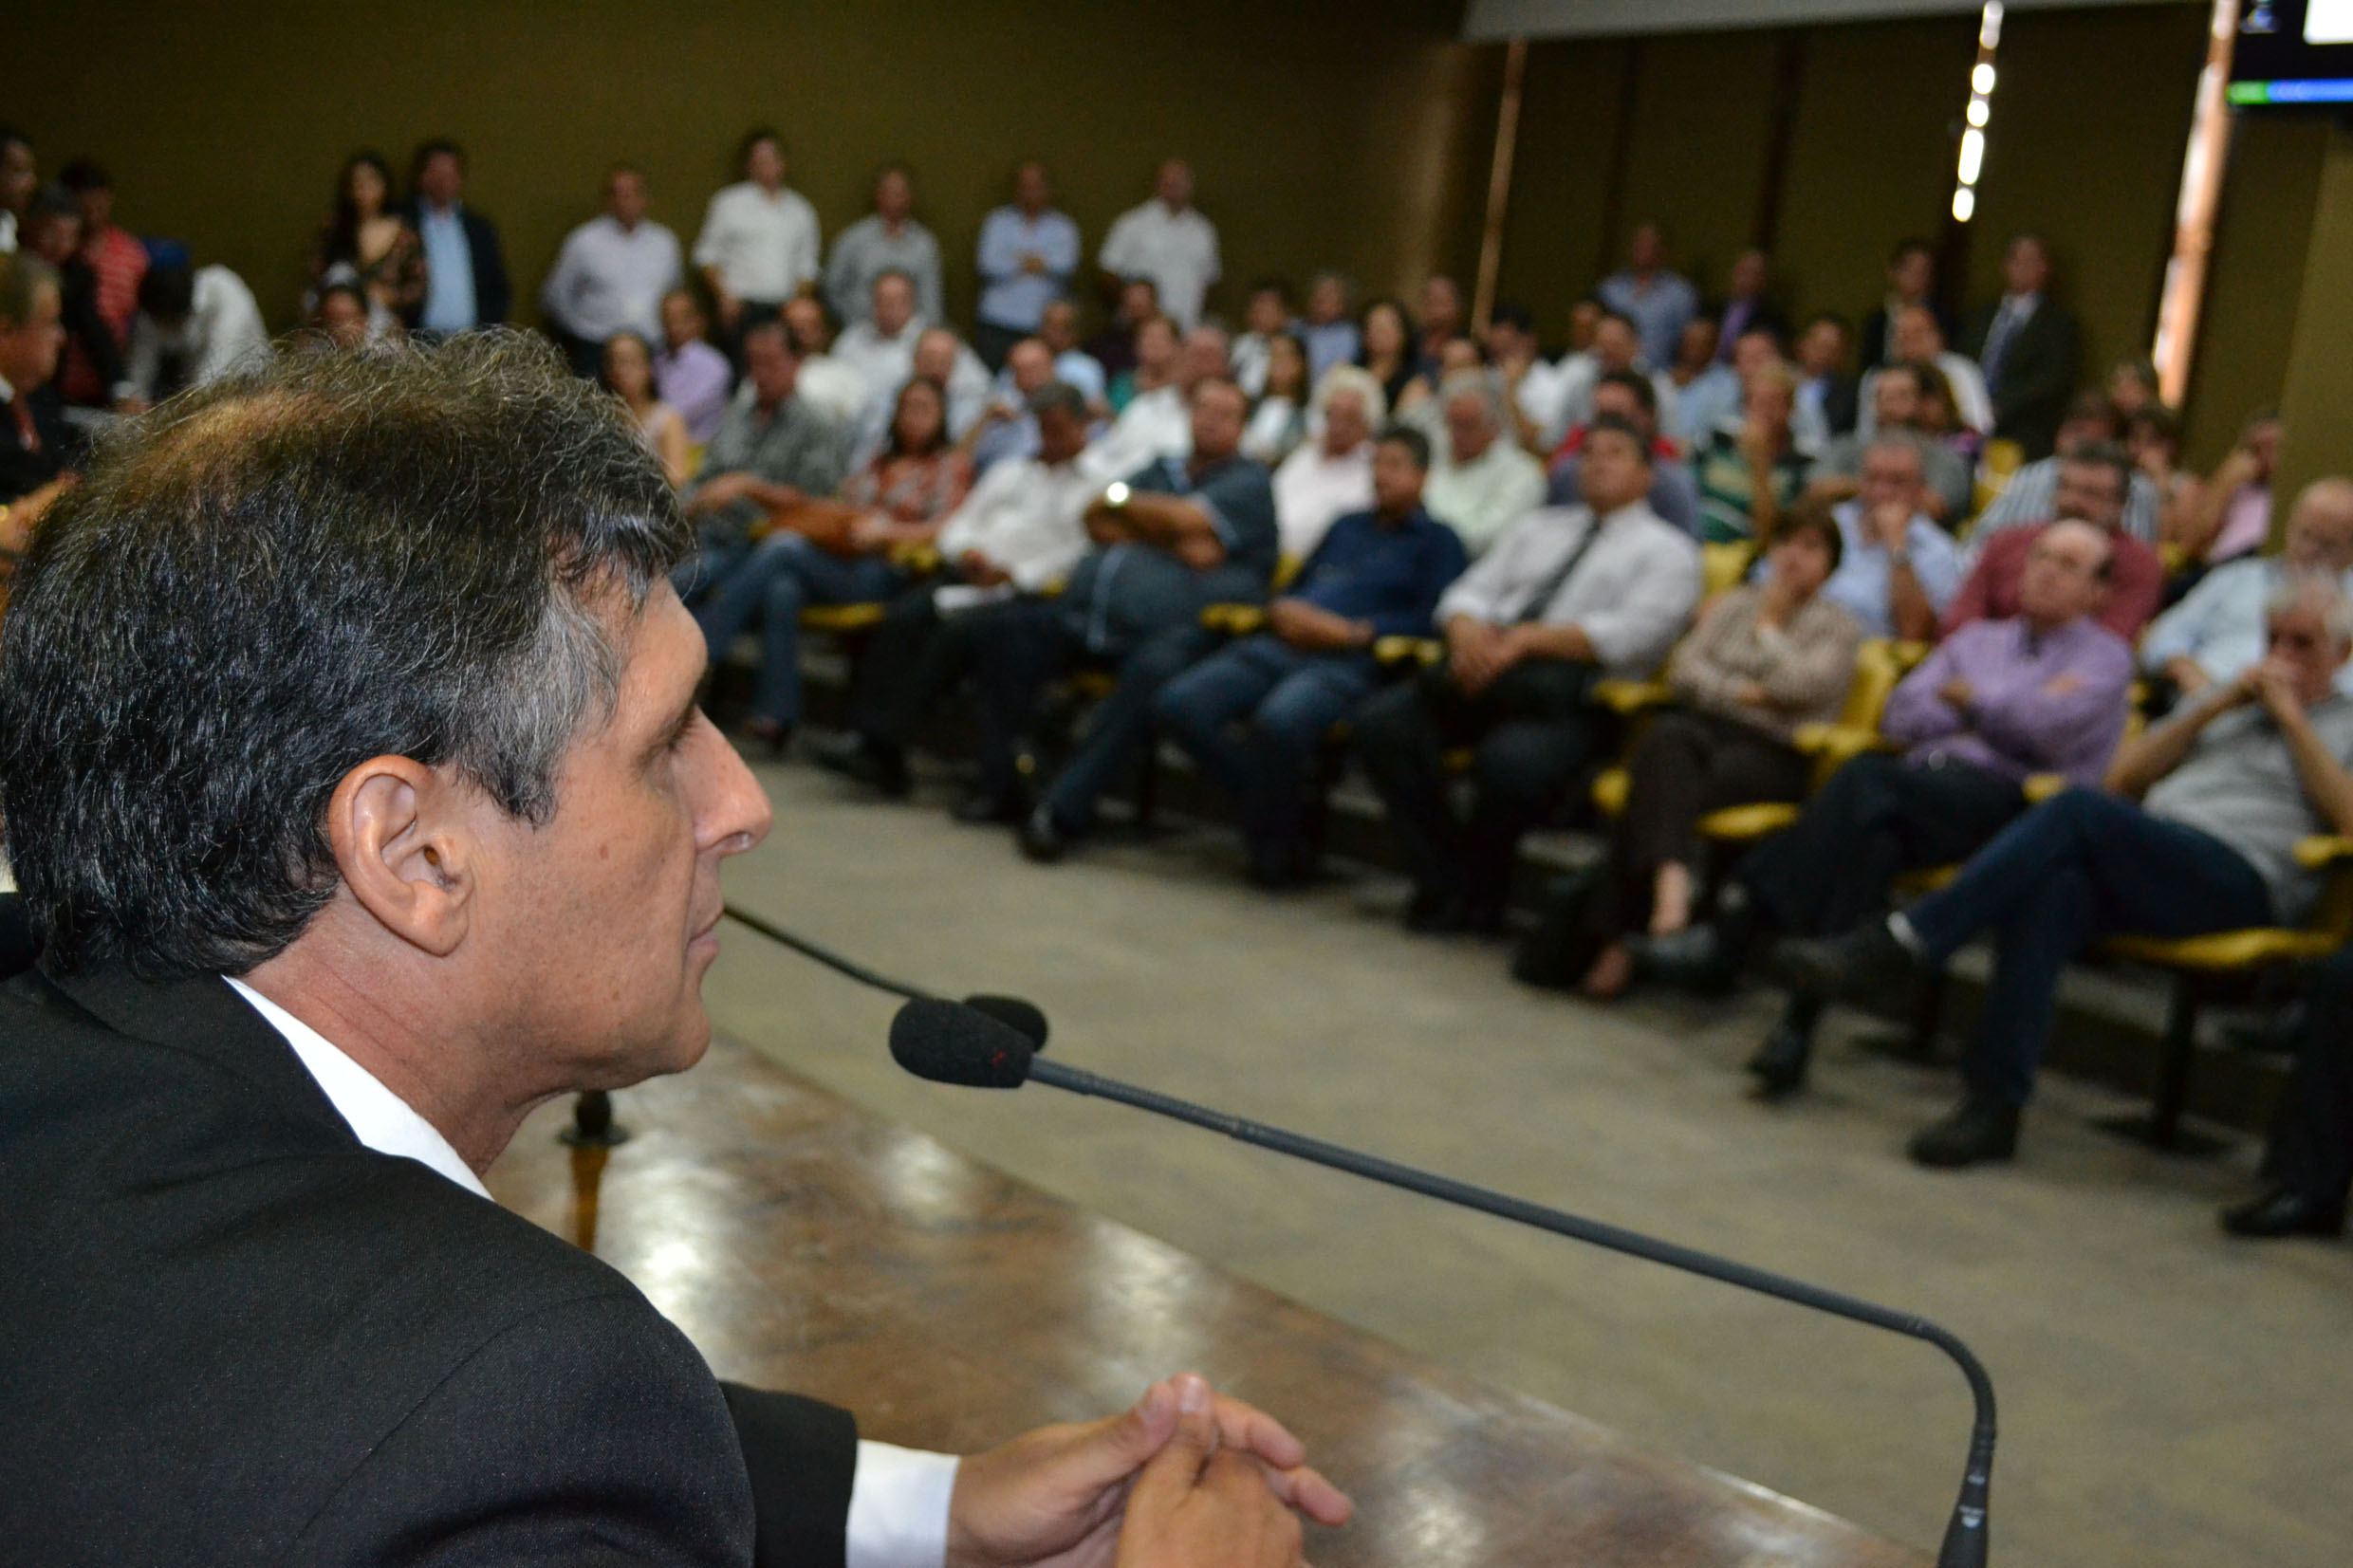 A reunio dos prefeitos foi promovida pelo deputado Sebastio Santos<a style='float:right;color:#ccc' href='https://www3.al.sp.gov.br/repositorio/noticia/N-11-2014/fg166012.jpg' target=_blank><i class='bi bi-zoom-in'></i> Clique para ver a imagem </a>